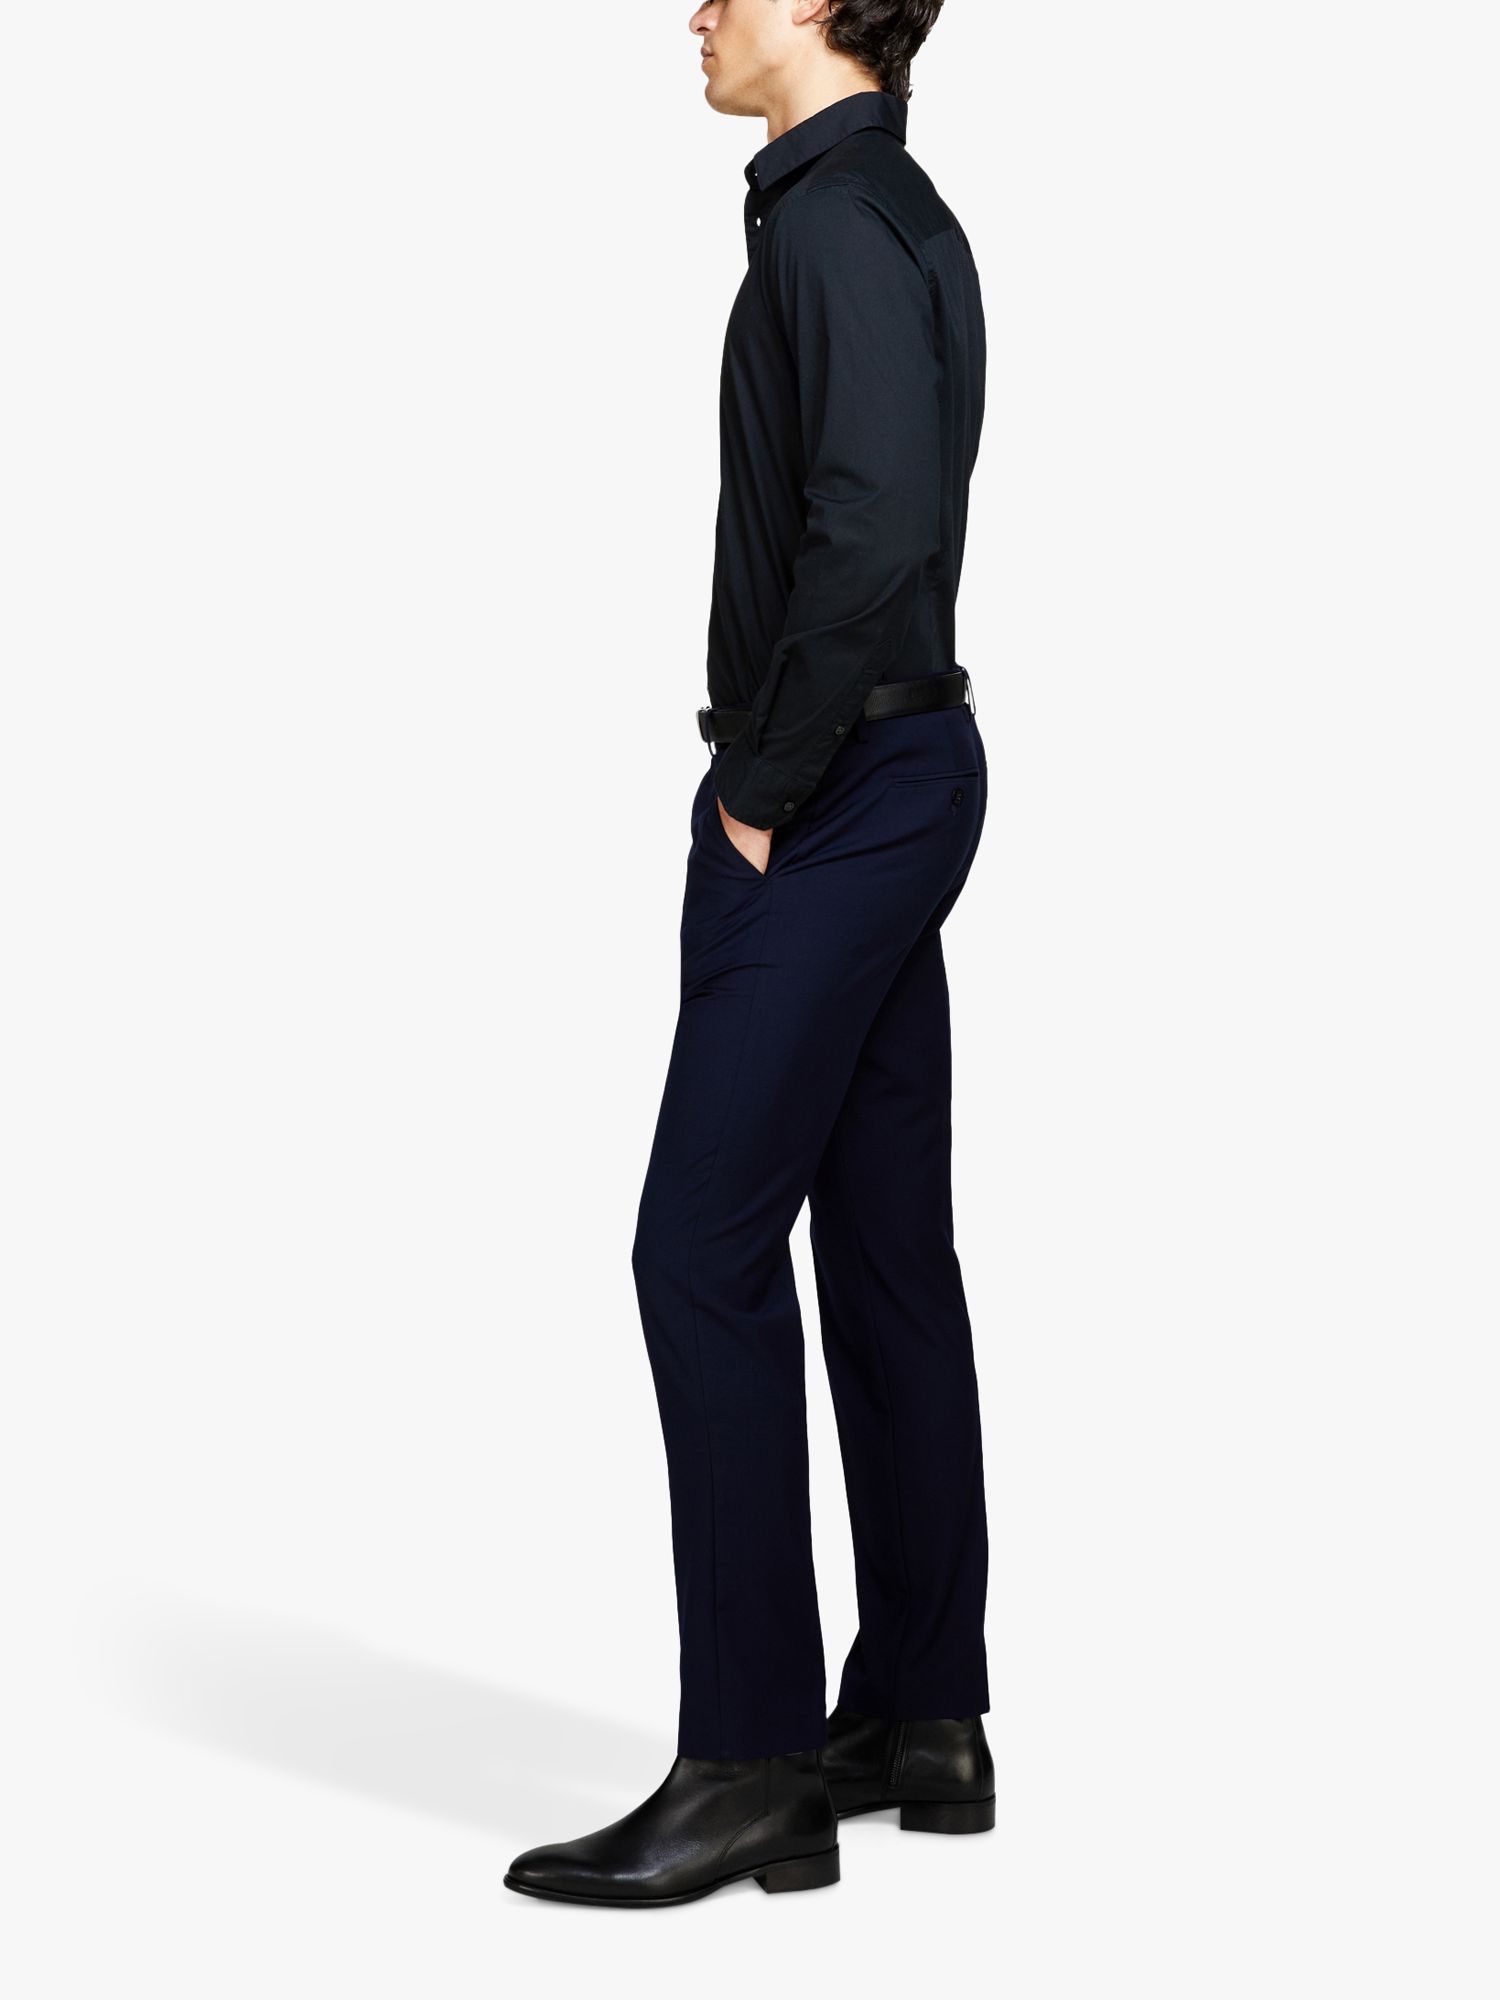 SISLEY Formal Slim Fit Trousers, Navy, 30